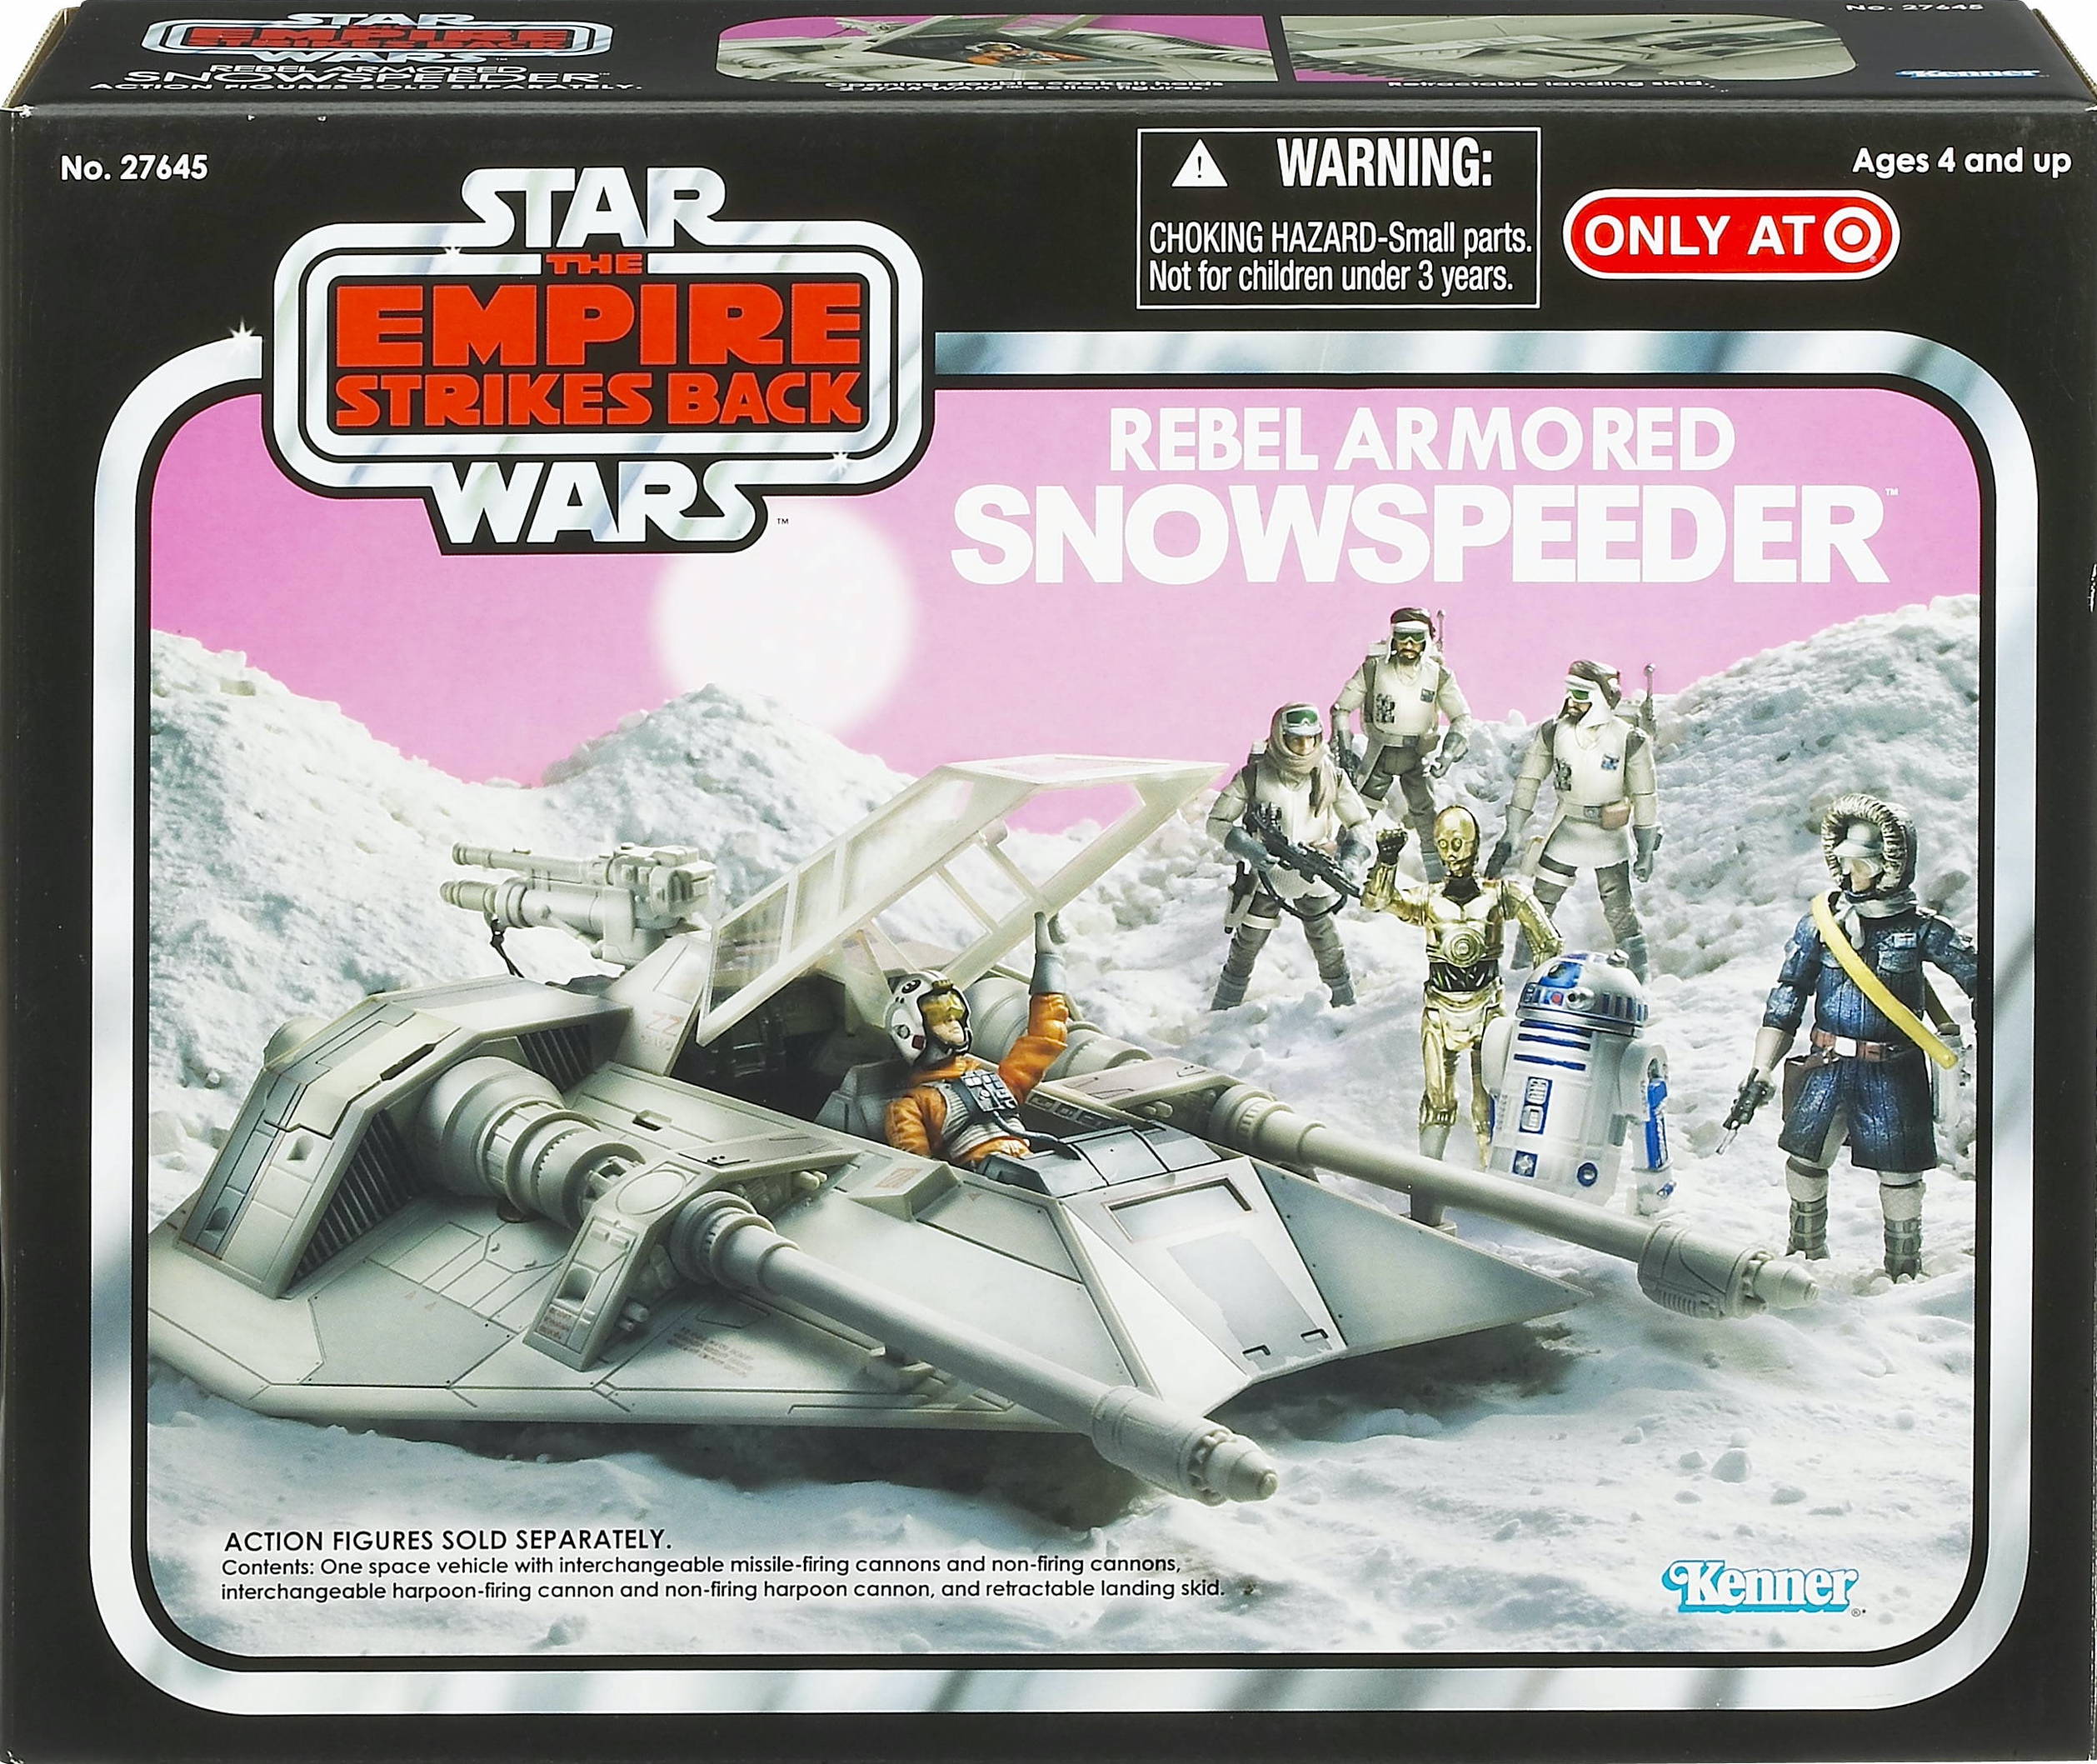 Vintage Star Wars Snowspeeder Parts and Pieces Always 100% Original 